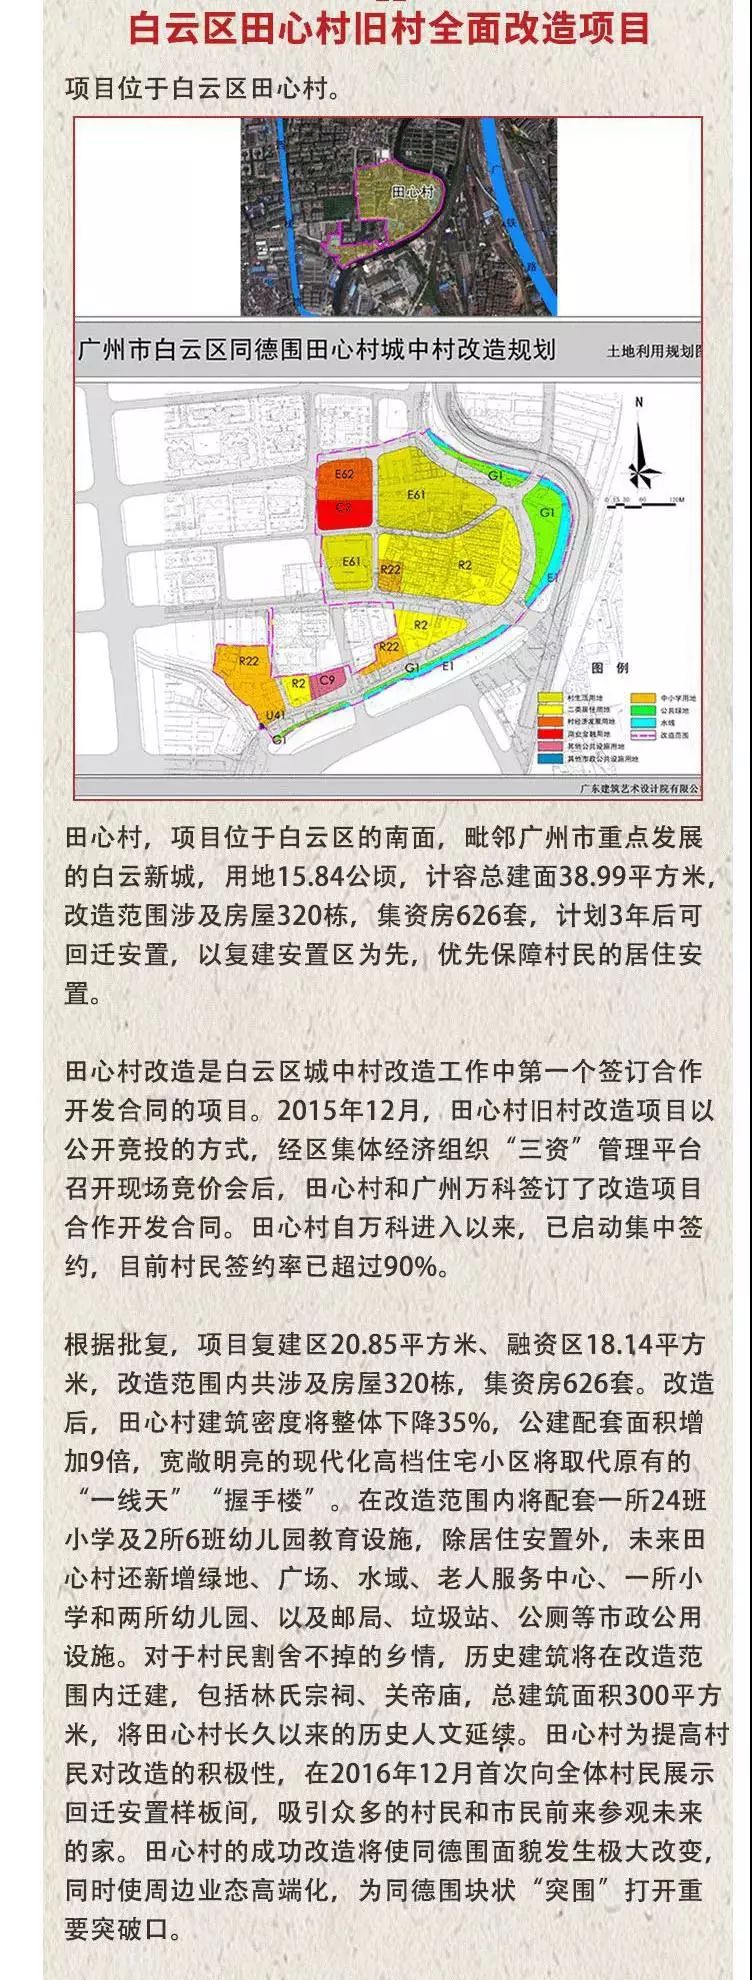 726亿36个更新项目广州三旧改造清单出炉番禺区收益最大